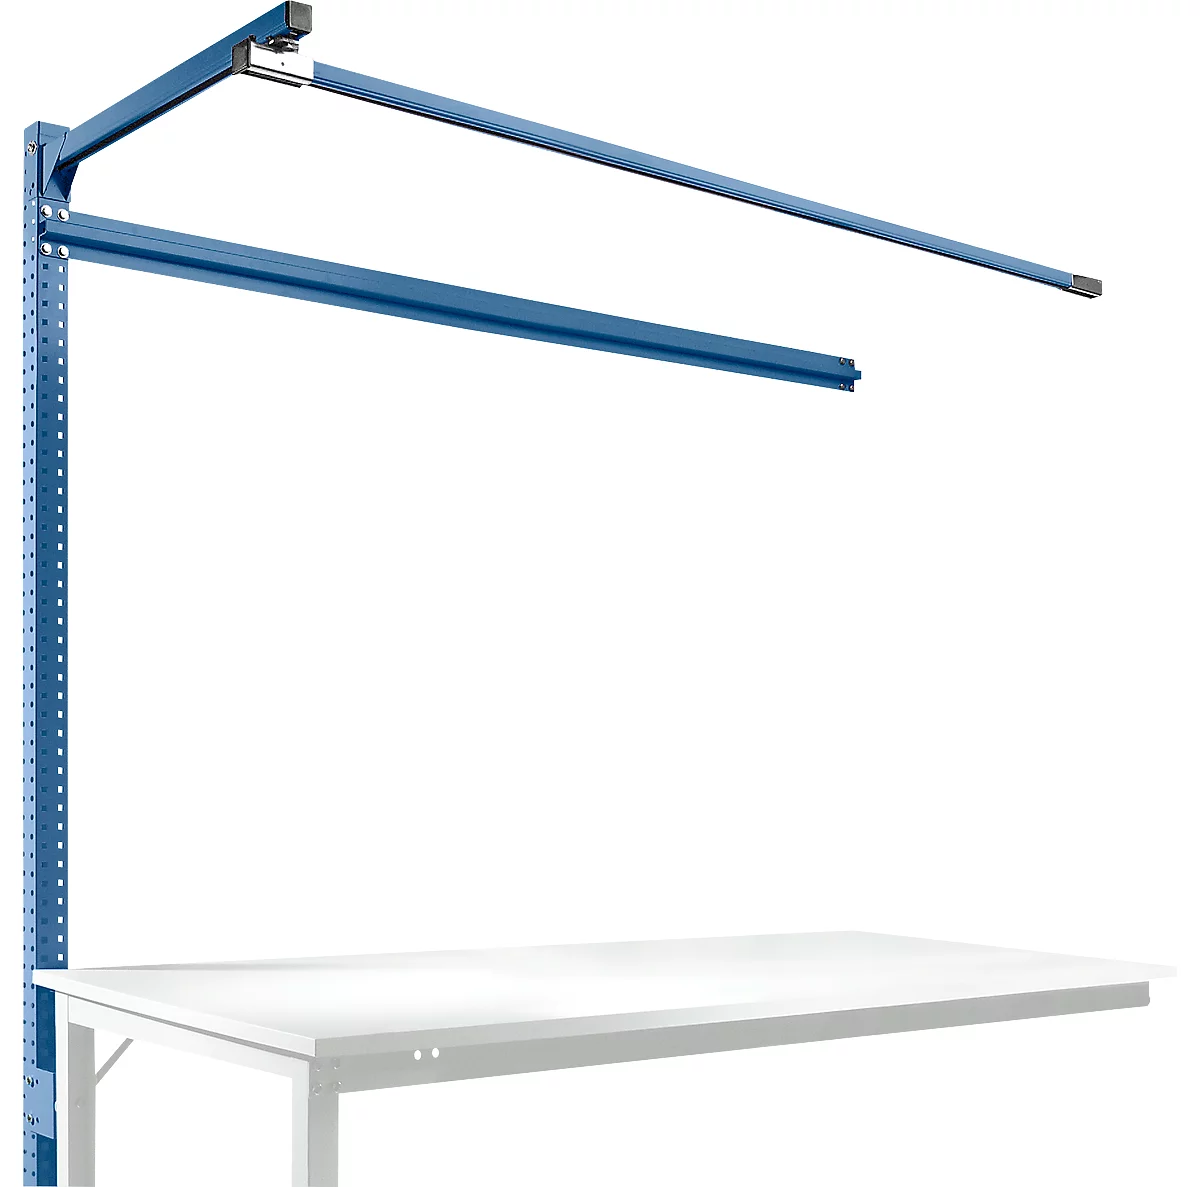 Estructura pórtica adicional con brazo saliente, Mesa de extensión SPEZIAL mesa de trabajo/banco de trabajo UNIVERSAL/PROFI, 1750 mm, azul brillante